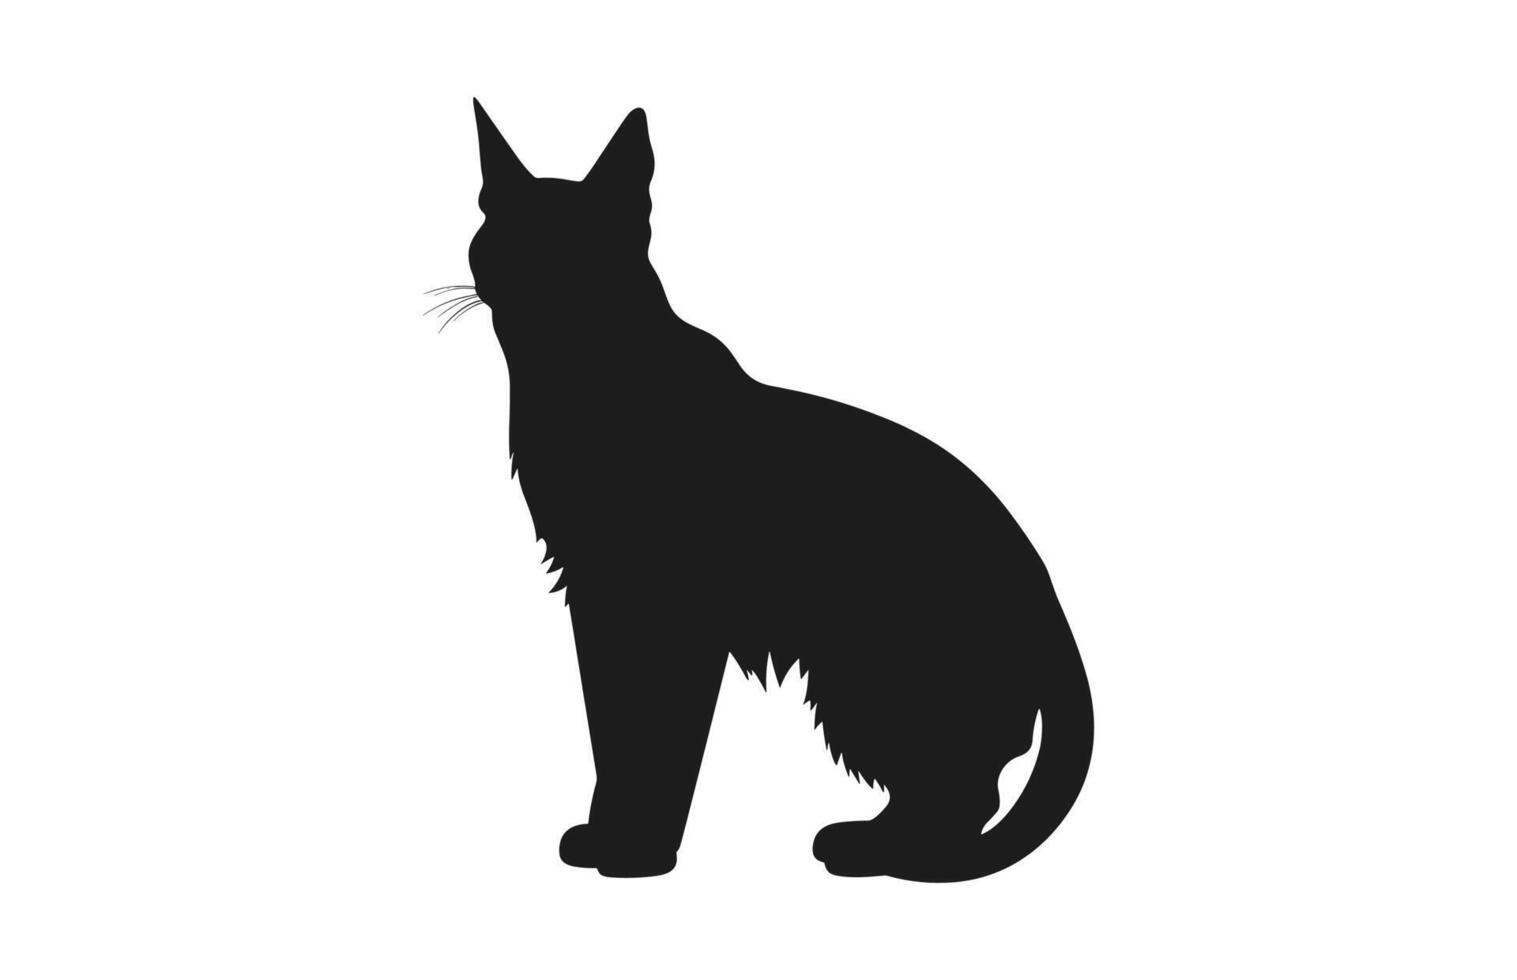 Lynx chat silhouette noir vecteur isolé sur une blanc Contexte